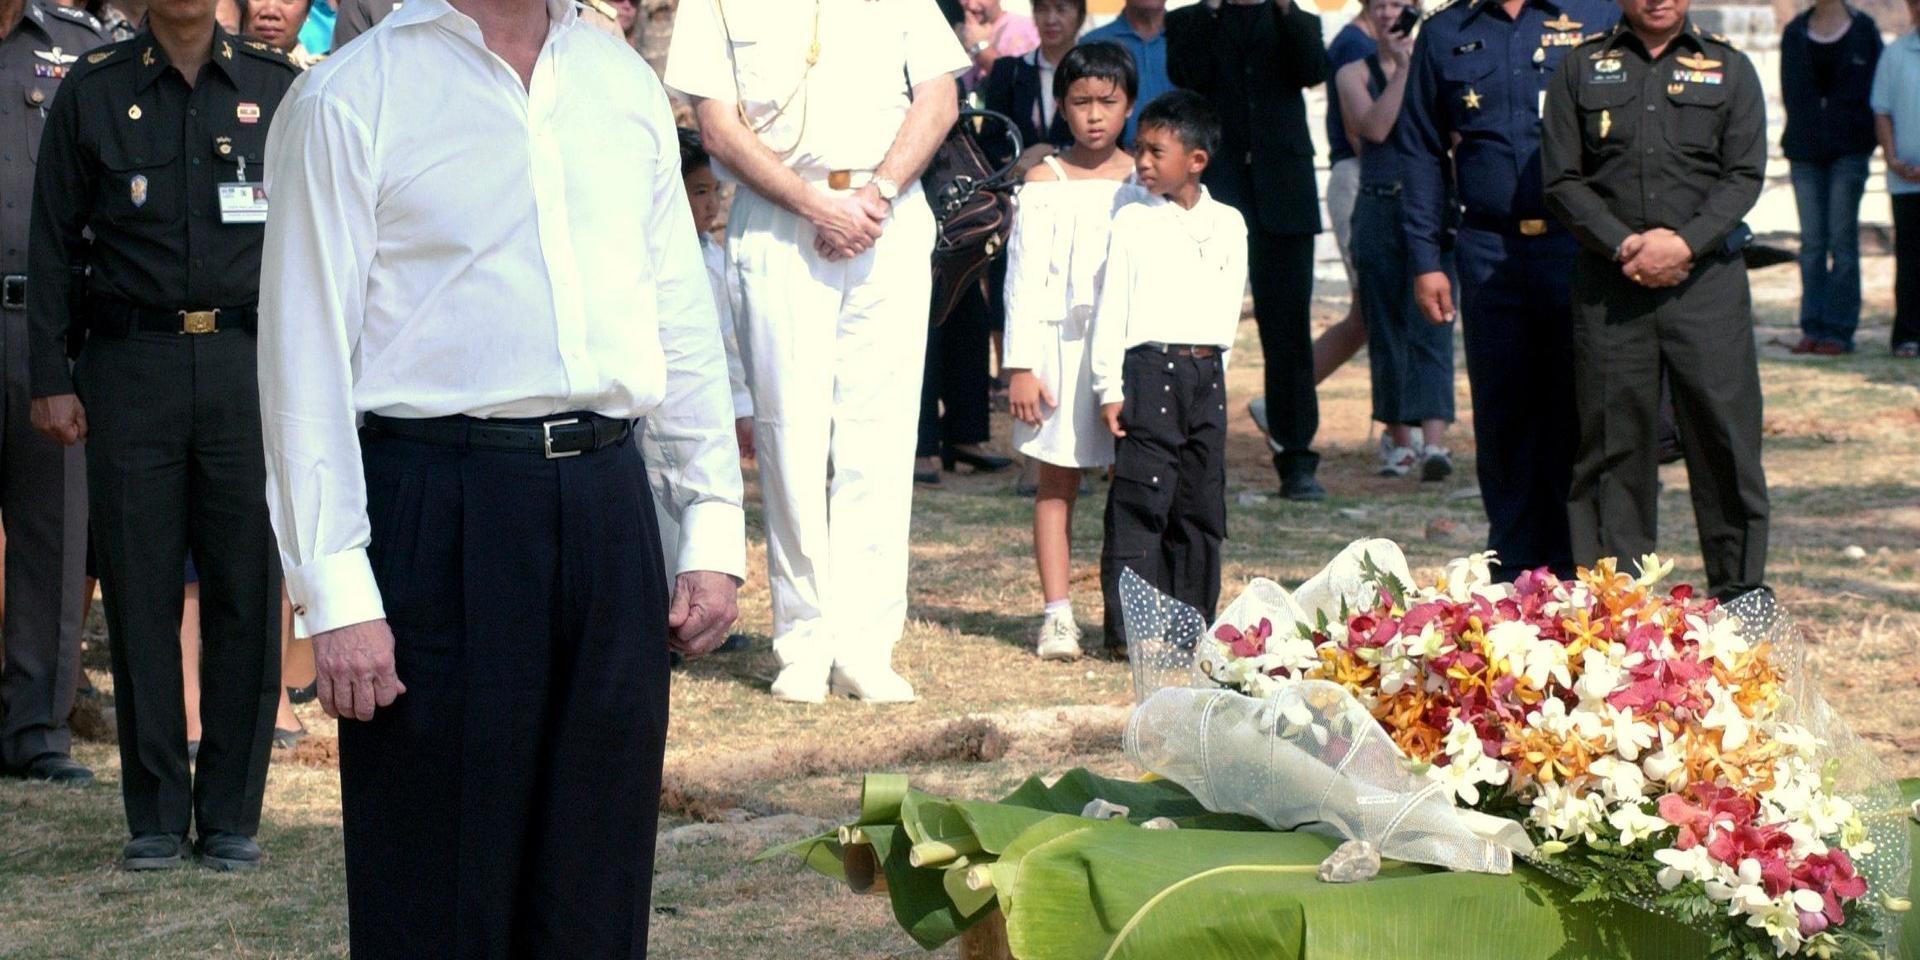 Kungen gjorde flera personliga uttalanden efter tsunamin i Sydostasien 2004, där fler än 500 svenskar miste livet. På bilden deltar kungen i en minnesceremoni på plats utanför Phuket i februari 2005, under ett tre dagar långt statsbesök i landet.